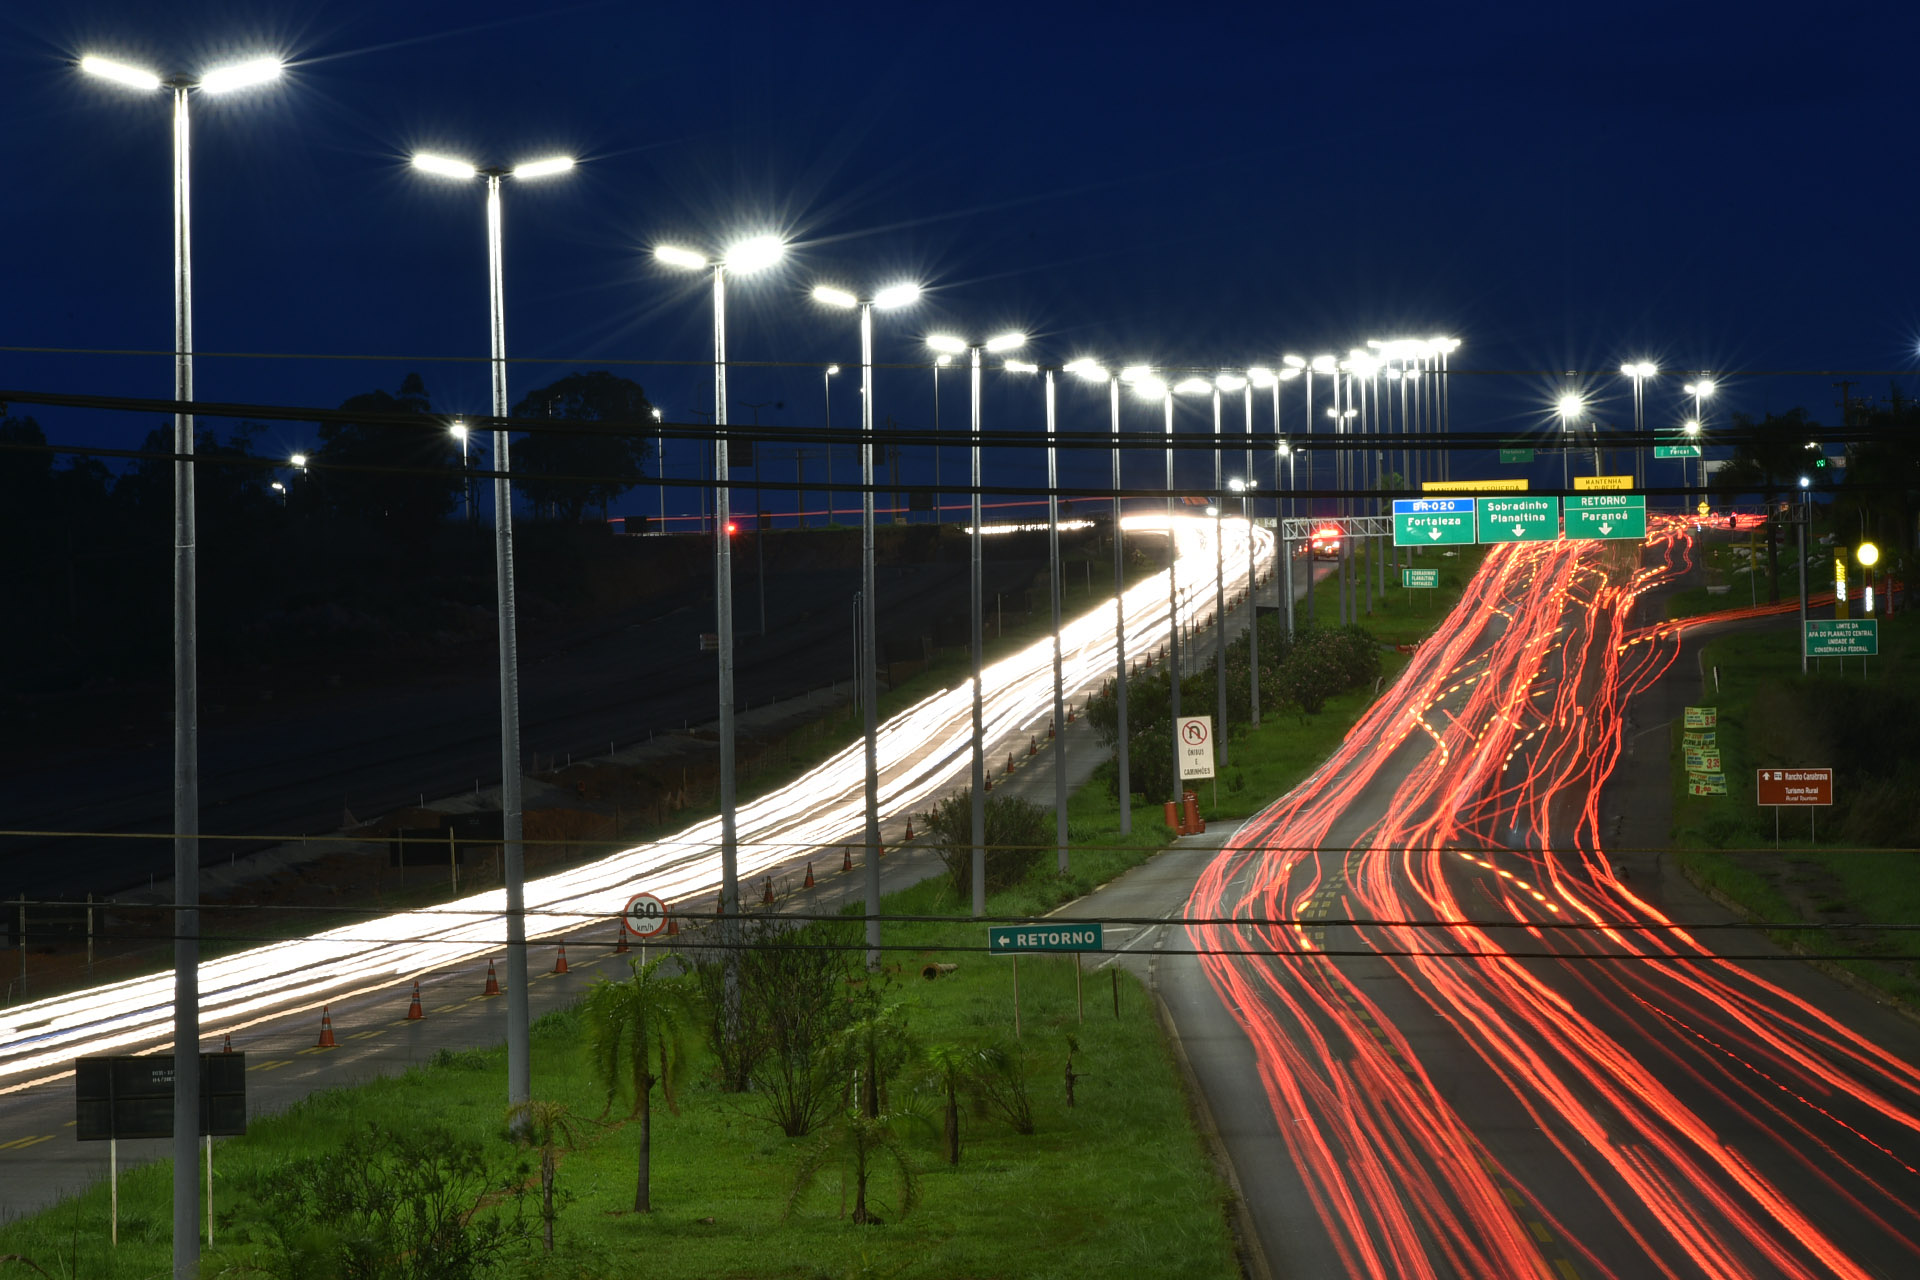 Até o fim de 2018, 14.214 luminárias de LED (diodo emissor de luz, em português) estarão instaladas em áreas públicas do Distrito Federal. A troca de lâmpadas convencionais pelo modelo mais econômico faz parte do programa Ilumina Mais Brasília, iniciado em março deste ano.